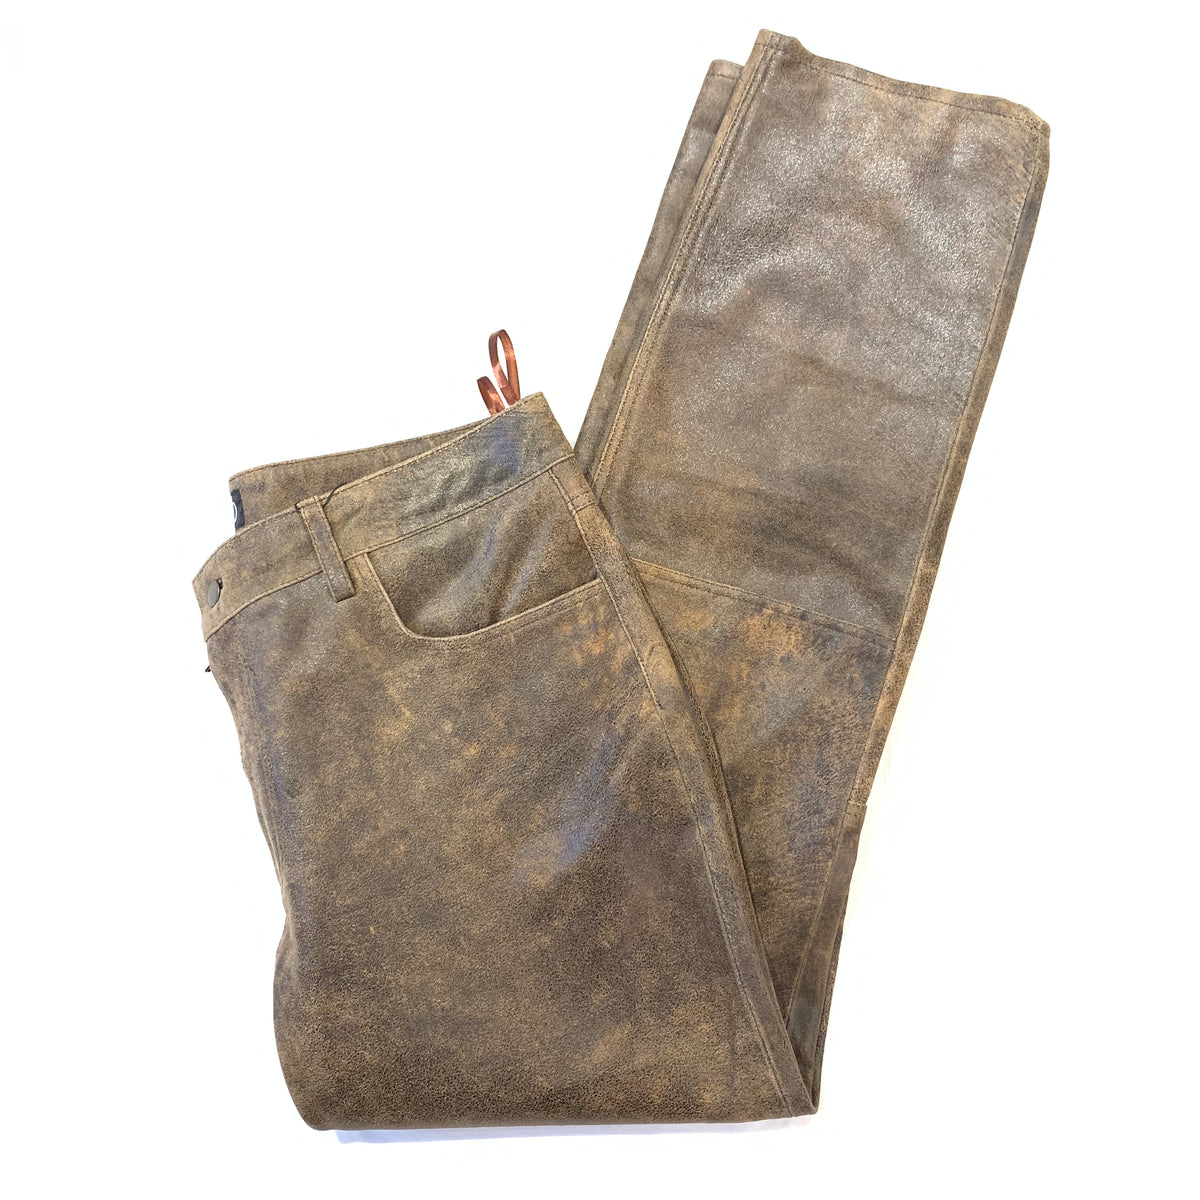 Kashani Men's Jungle Lambskin Straight Cut Leather Pants - Dudes Boutique